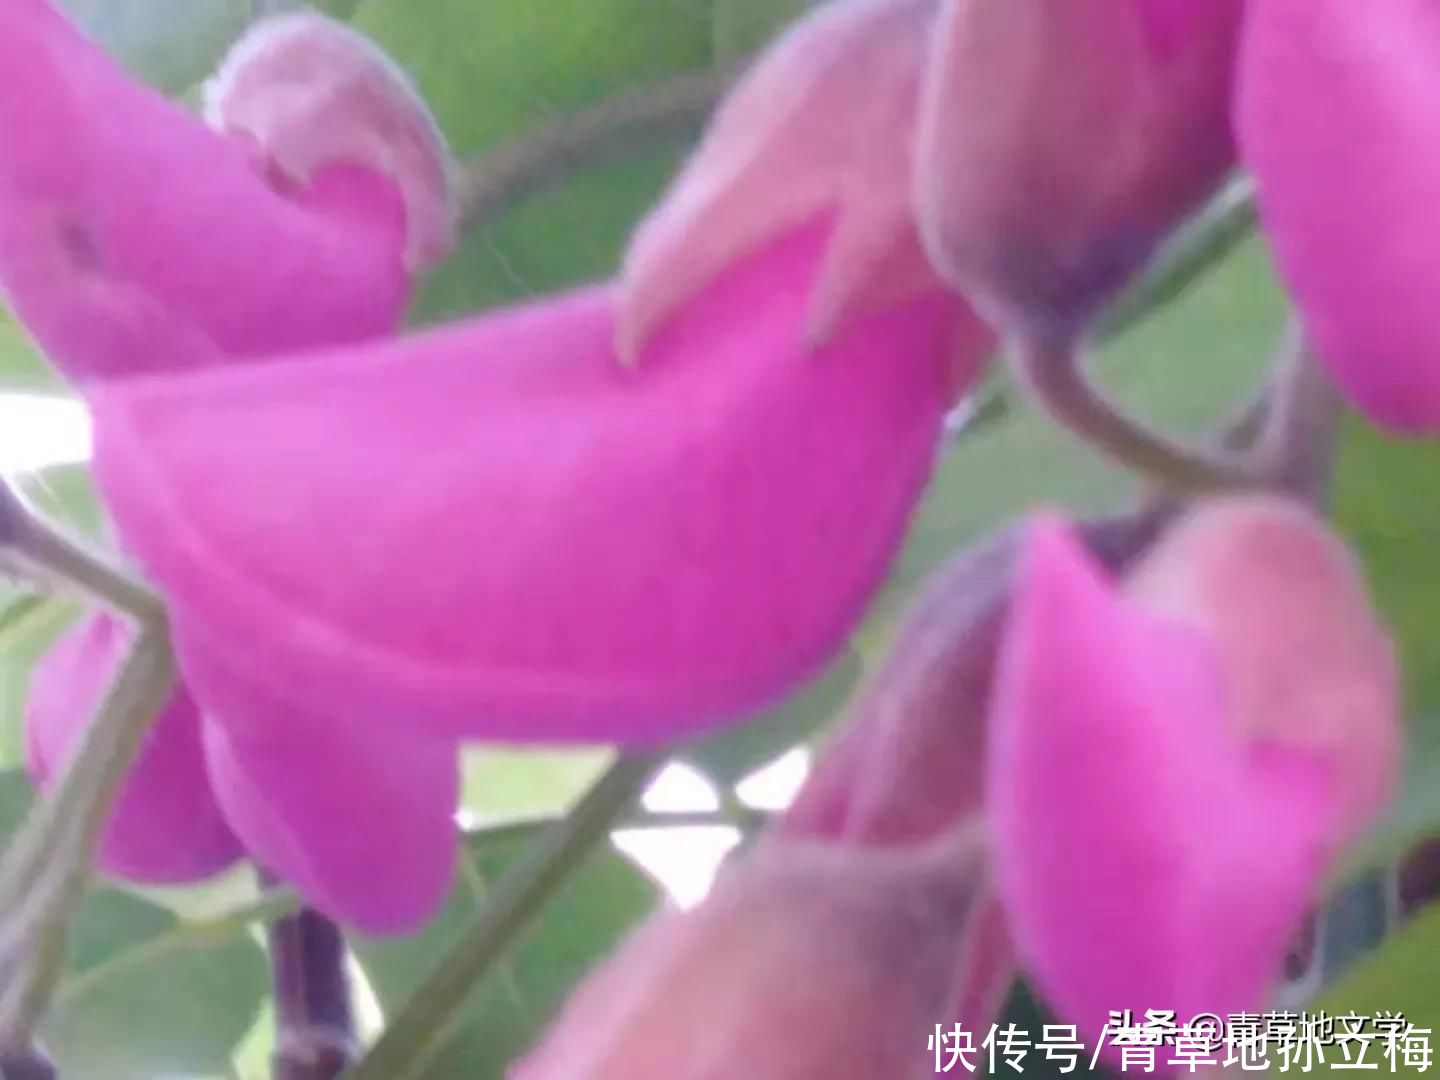 詩歌 五月 紫色的浪花 中國熱點